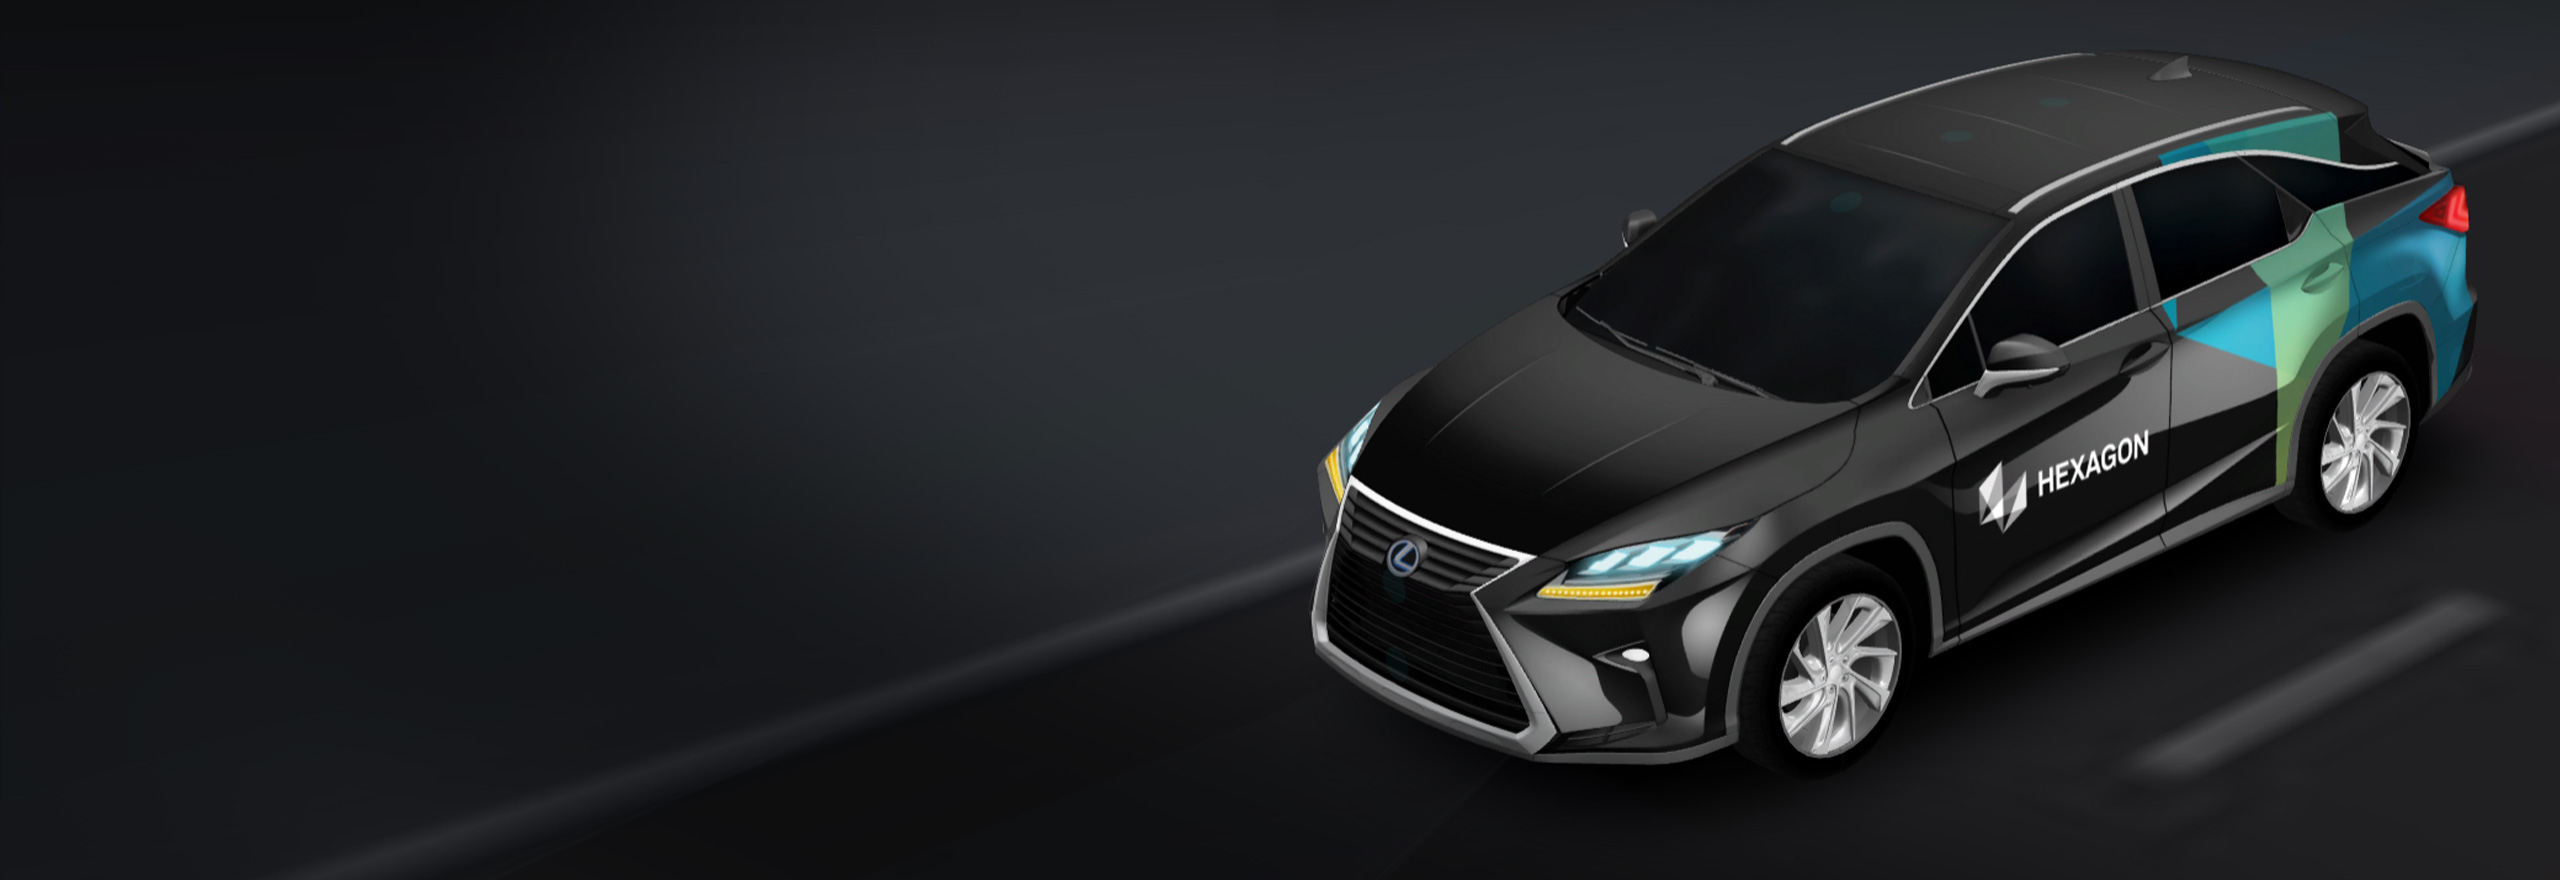 Representación en 3D de un coche autónomo con las tecnologías de posicionamiento y percepción necesarias para permitir la autonomía y ADAS.